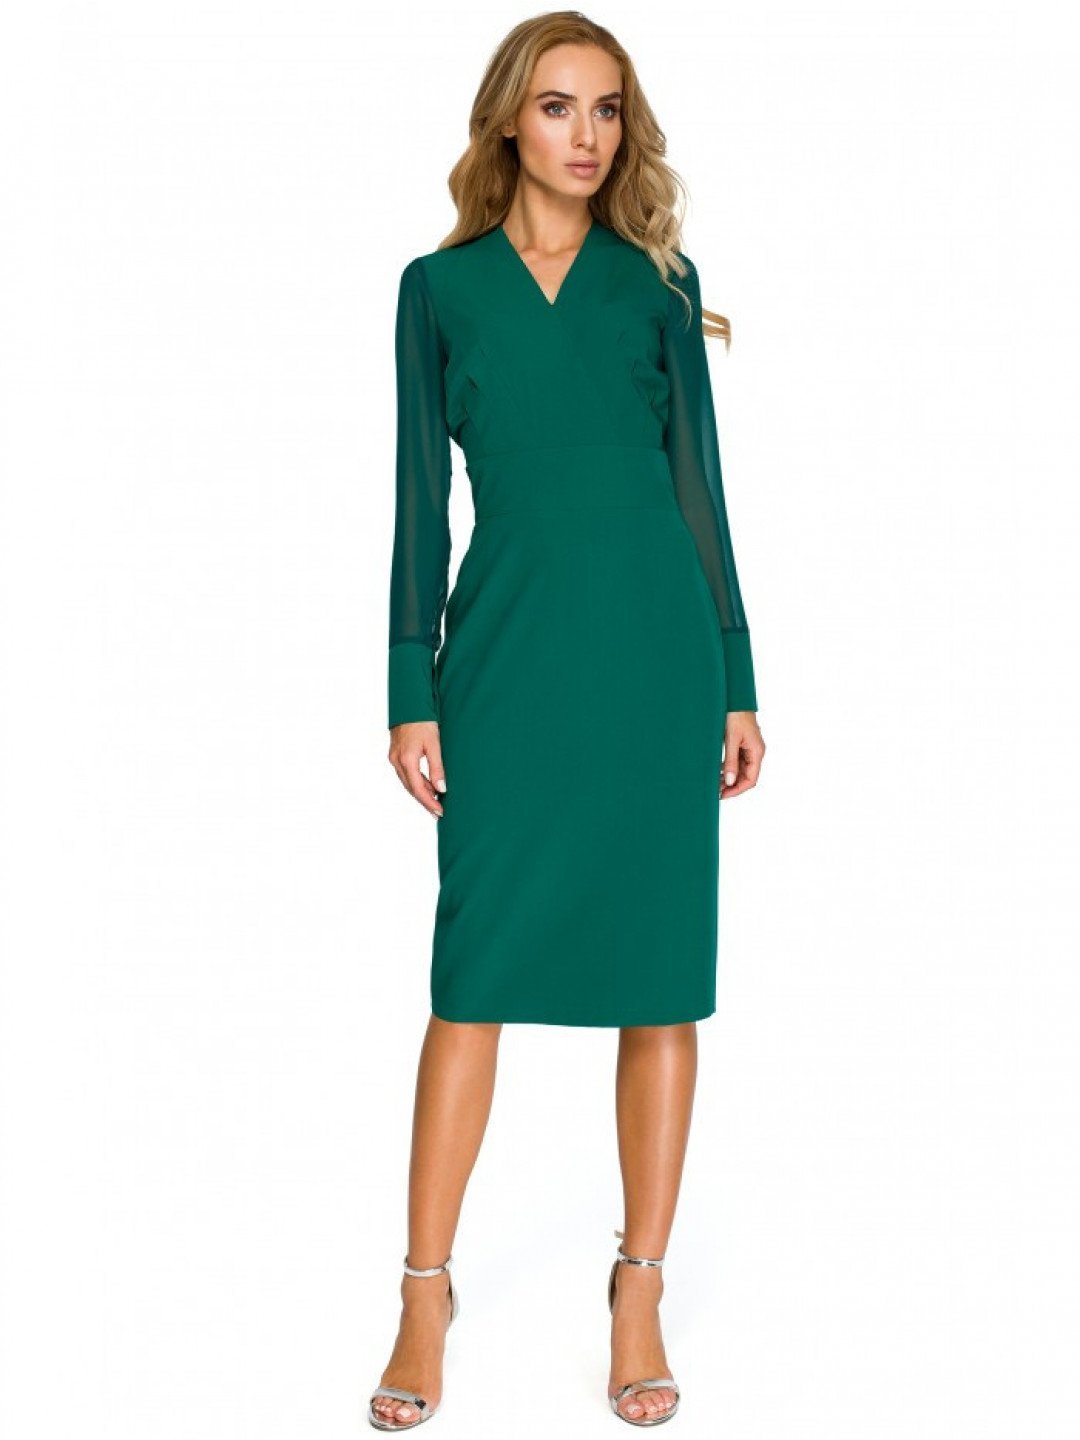 S136 Šifonové pouzdrové šaty s dlouhými rukávy – zelené EU XXL